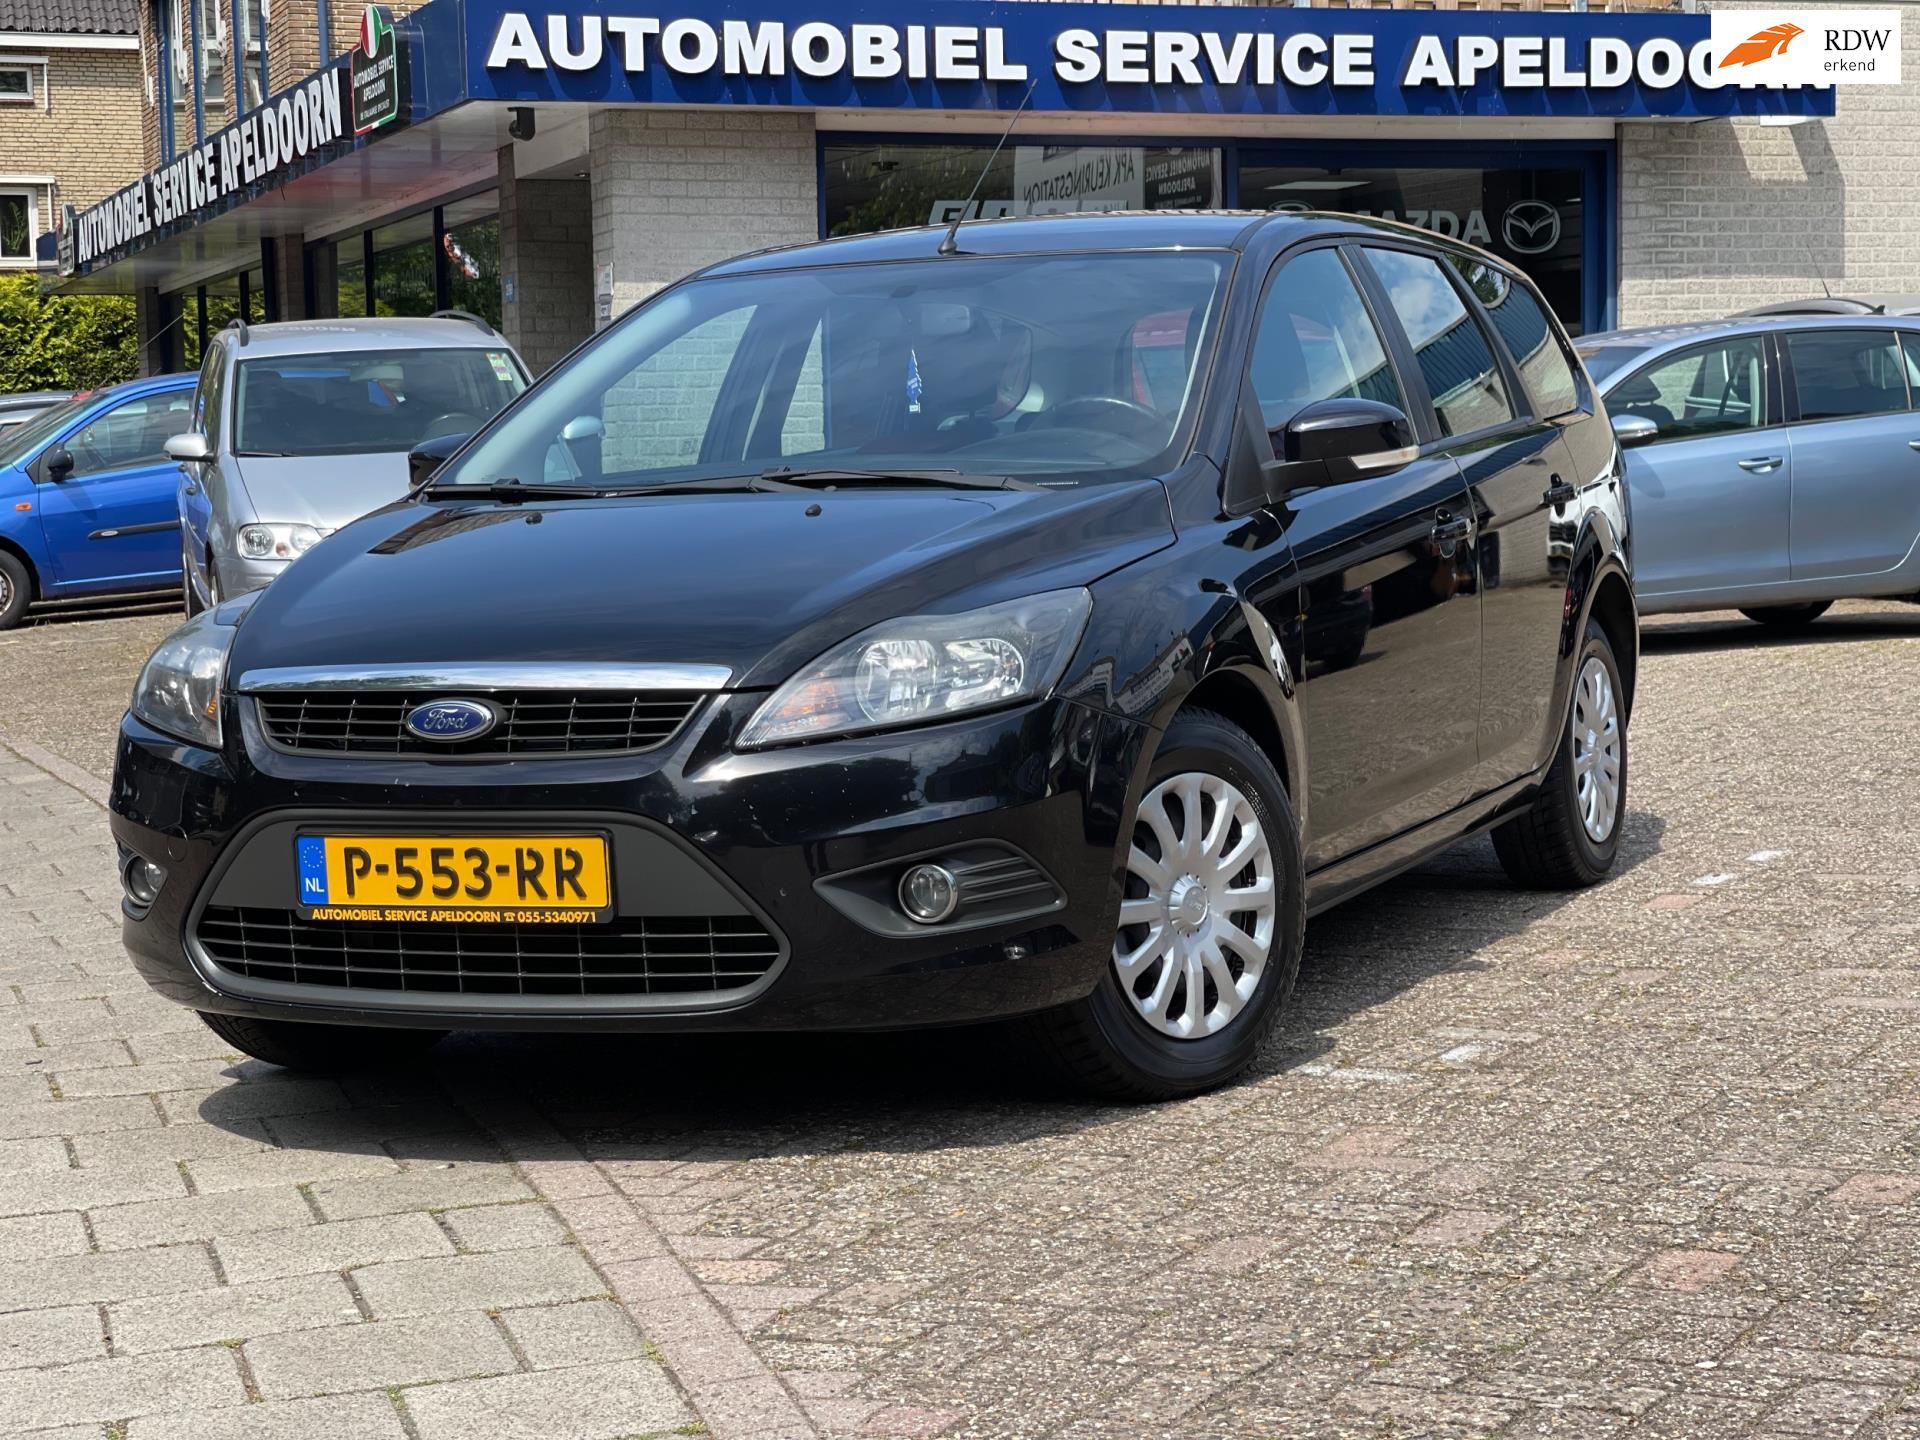 Ford Focus Wagon occasion - Automobiel Service Apeldoorn